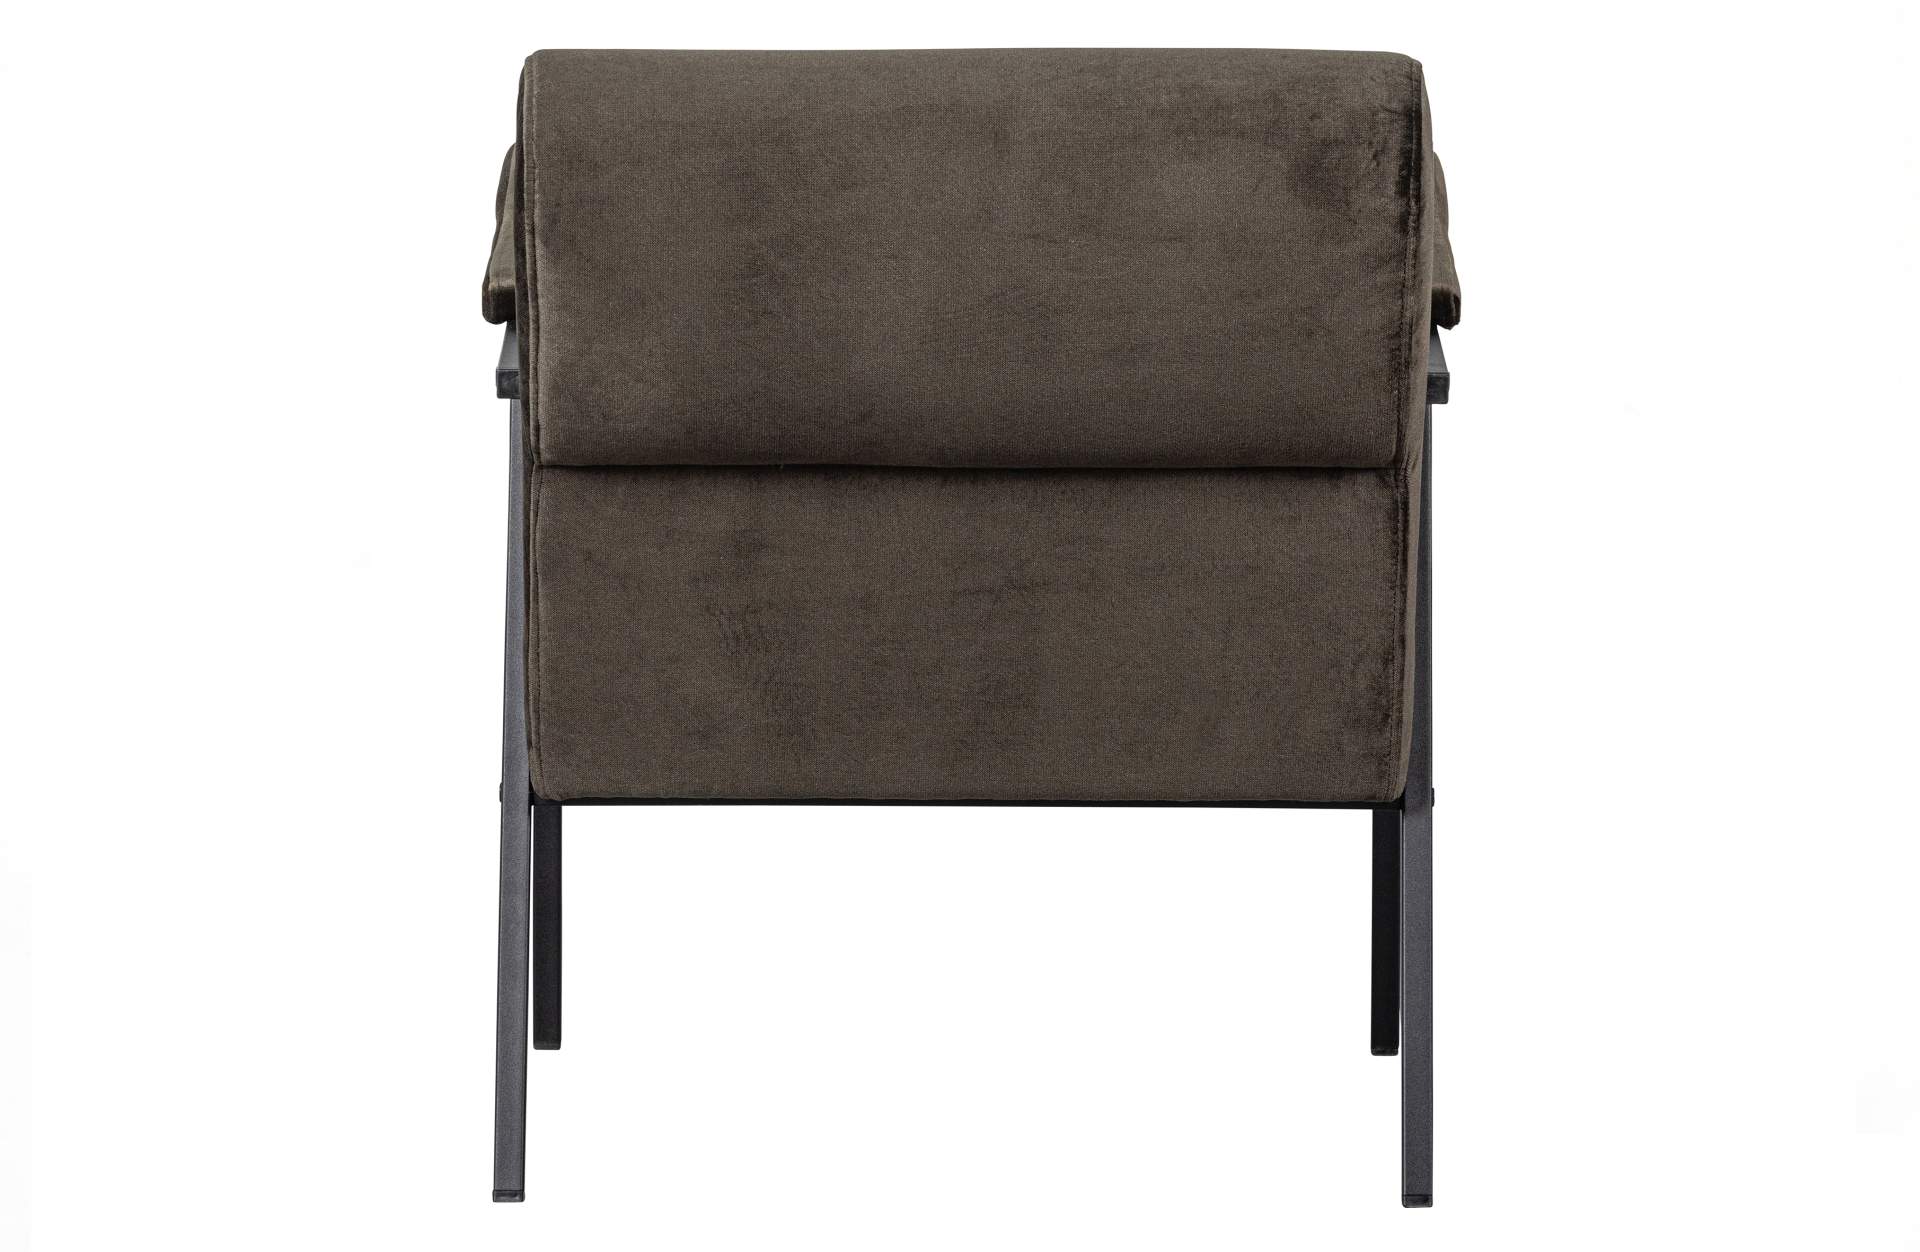 Der Sessel Scott überzeugt mit seinem klassischen Design. Gefertigt wurde er aus einem Samt-Stoff, welcher einen grünen Farbton besitzt. Das Gestell ist aus Metall und hat eine schwarze Farbe. Die Sitzhöhe beträgt 48 cm.